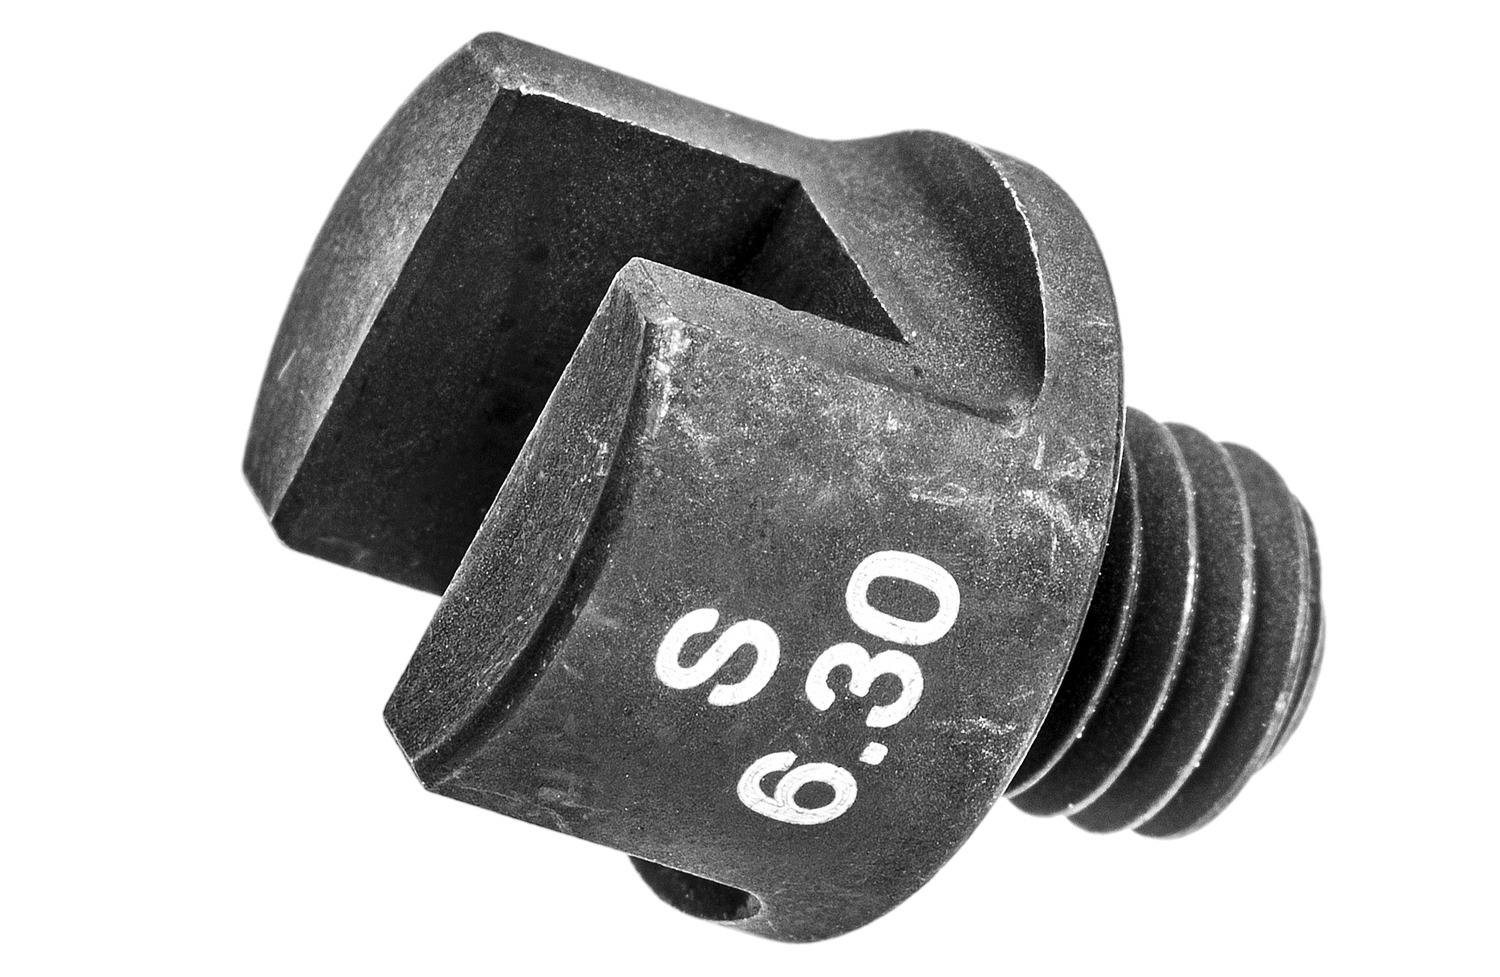 Obrázek produktu ocelový ořech 6,3 mm pro M016-149, BIKESERVICE BS5502S